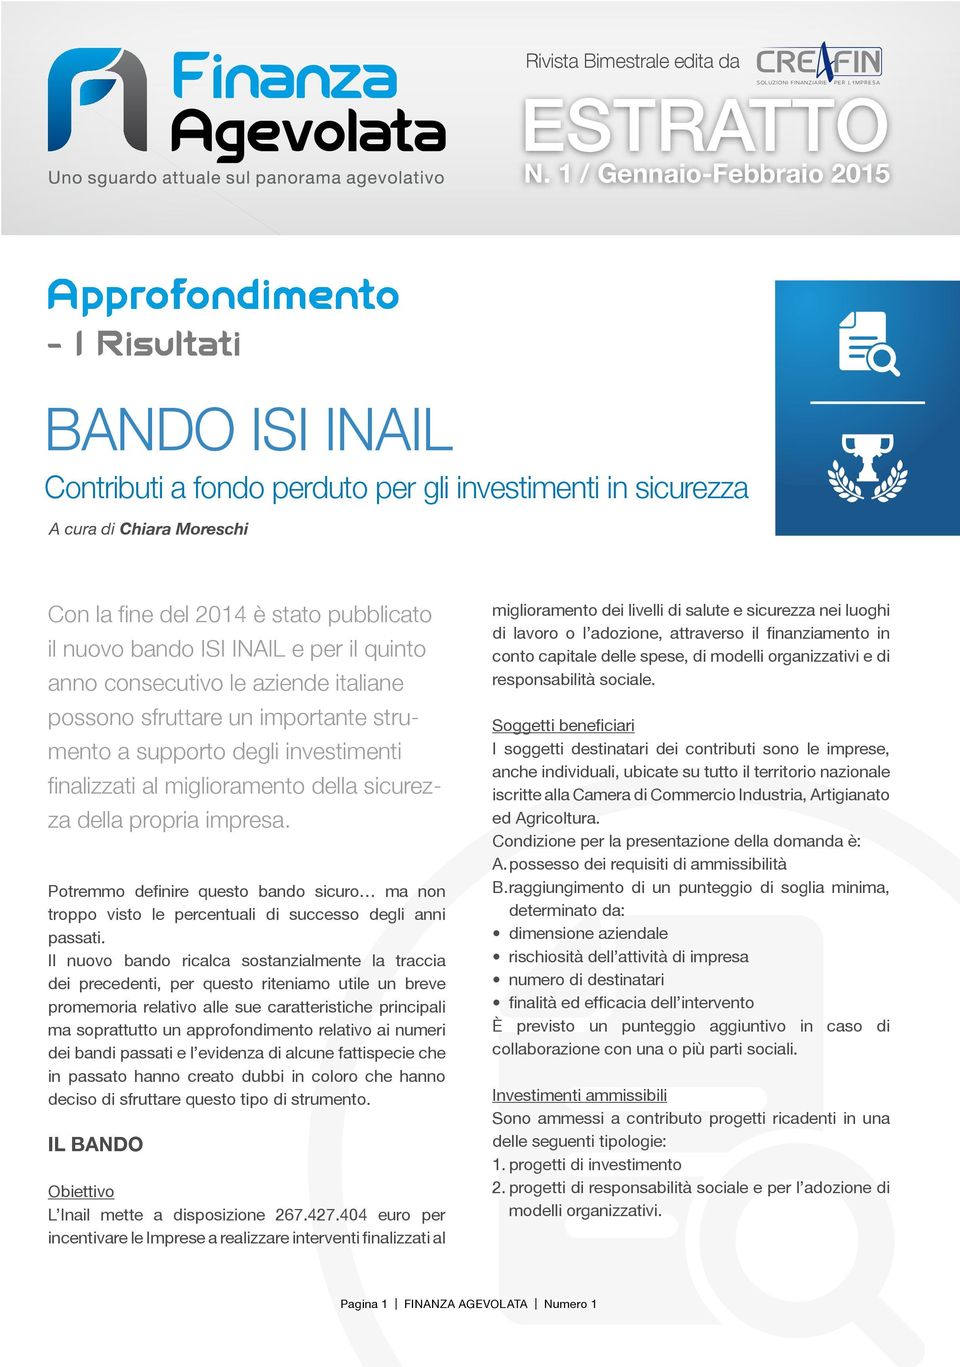 il nuovo bando ISI INAIL e per il quinto anno consecutivo le aziende italiane possono sfruttare un importante strumento a supporto degli investimenti finalizzati al miglioramento della sicurezza